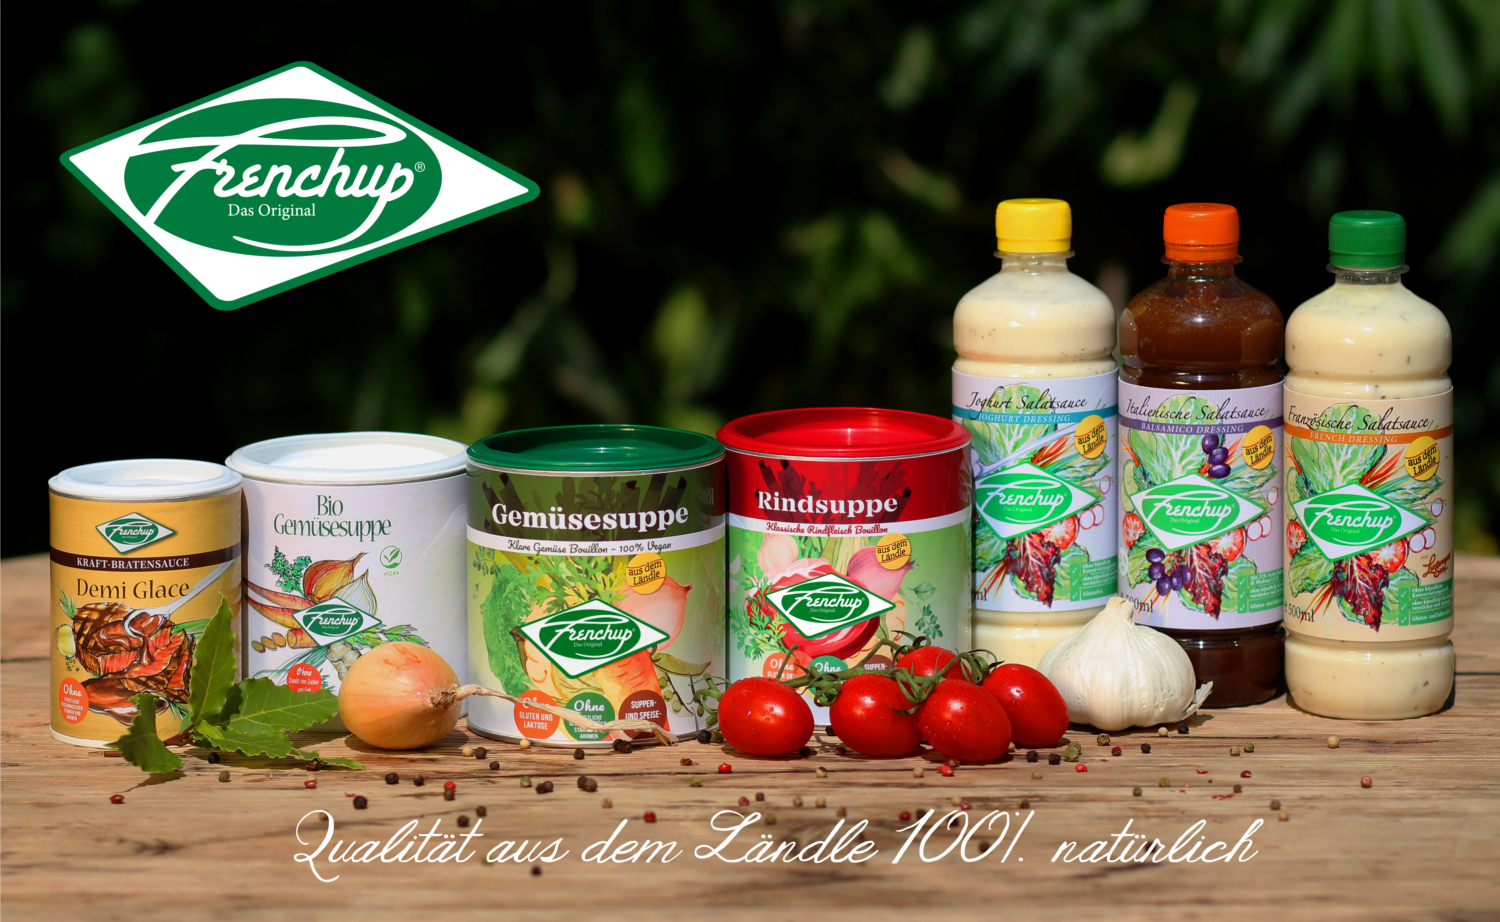 Frenchup – Lebensmittel und Convenience Produkte ohne künstliche Zusatzstoffe